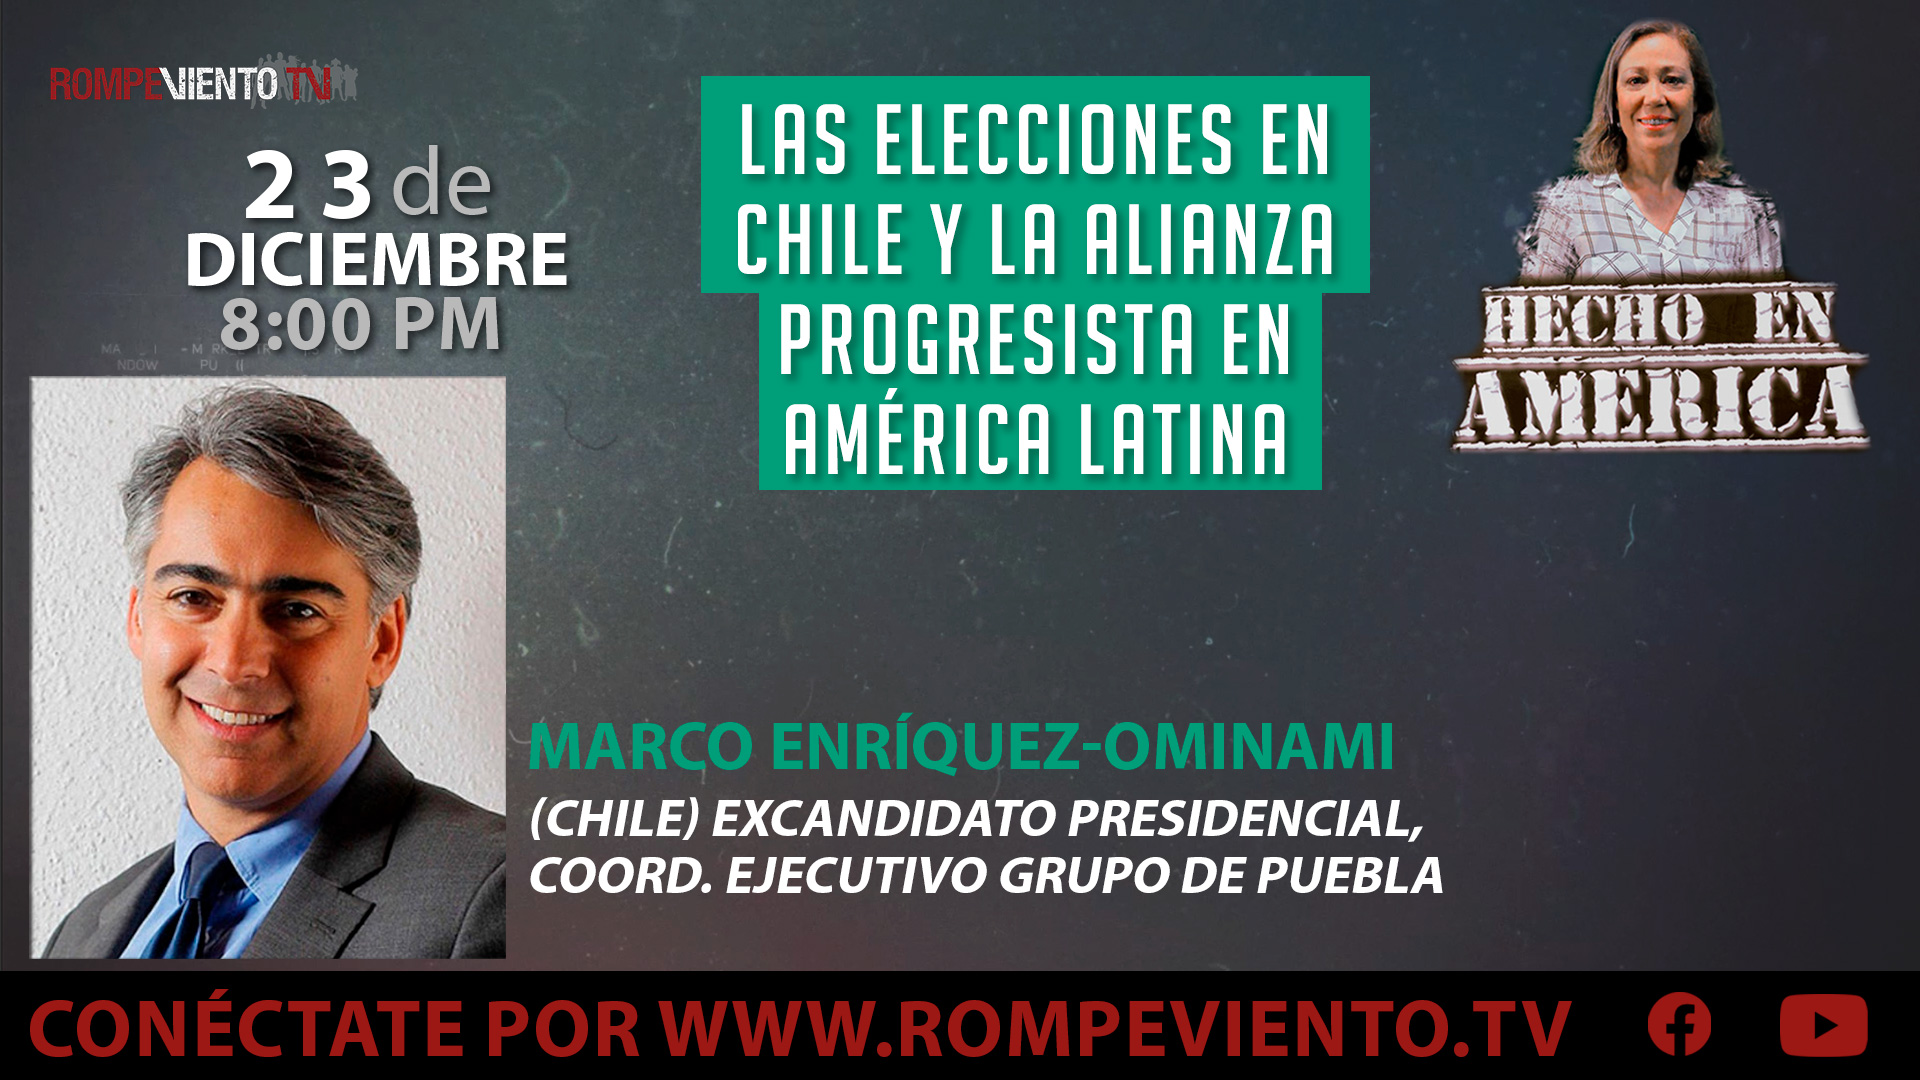 Las elecciones en Chile y la alianza progresista en América Latina - Hecho en América